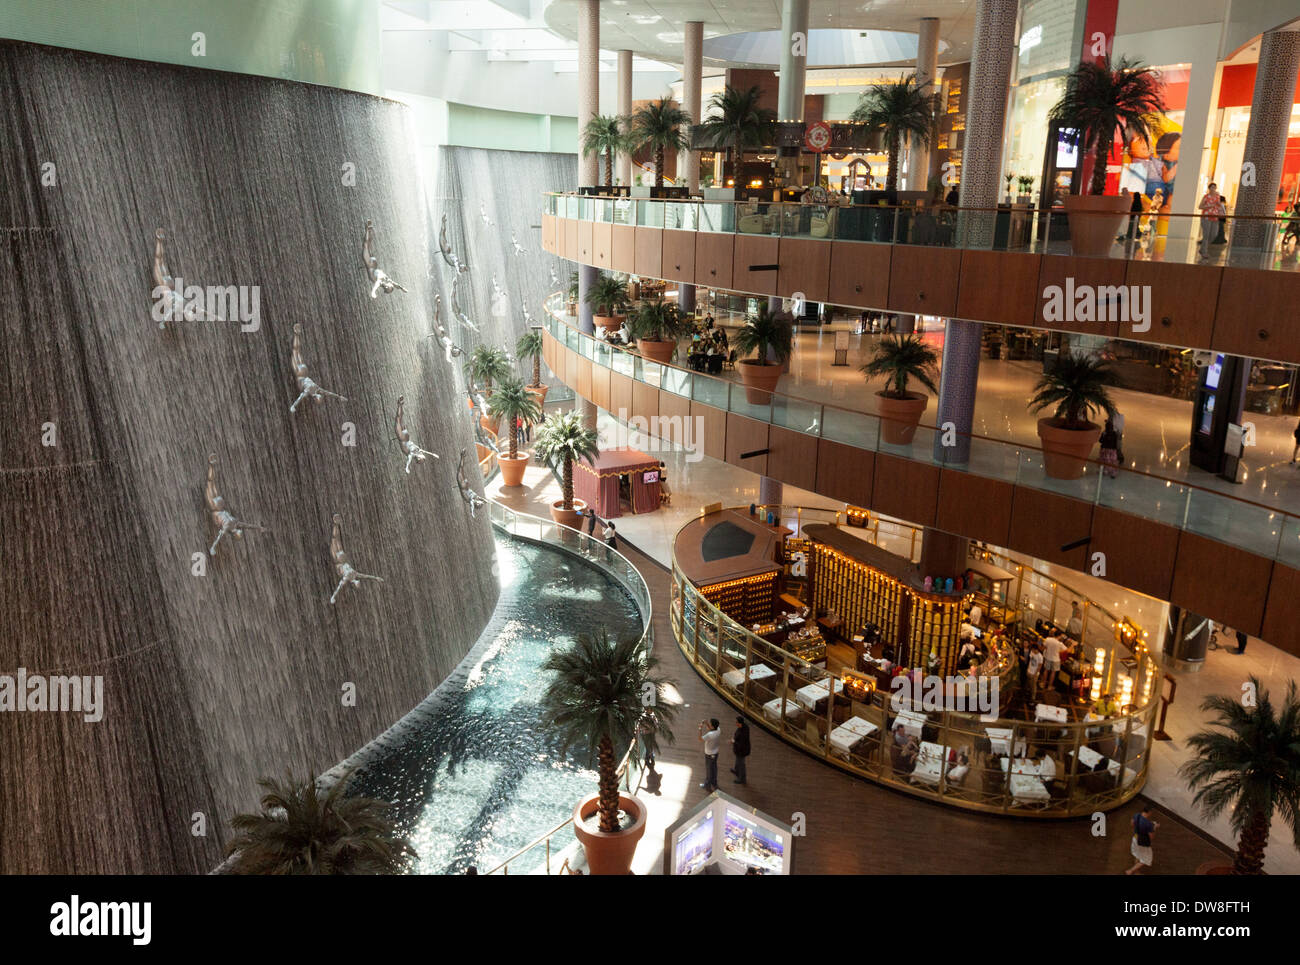 Dubai Mall Wasserfall und Skulptur, Dubai, Vereinigte Arabische Emirate, Vereinigte Arabische Emirate, Naher Osten Stockfoto